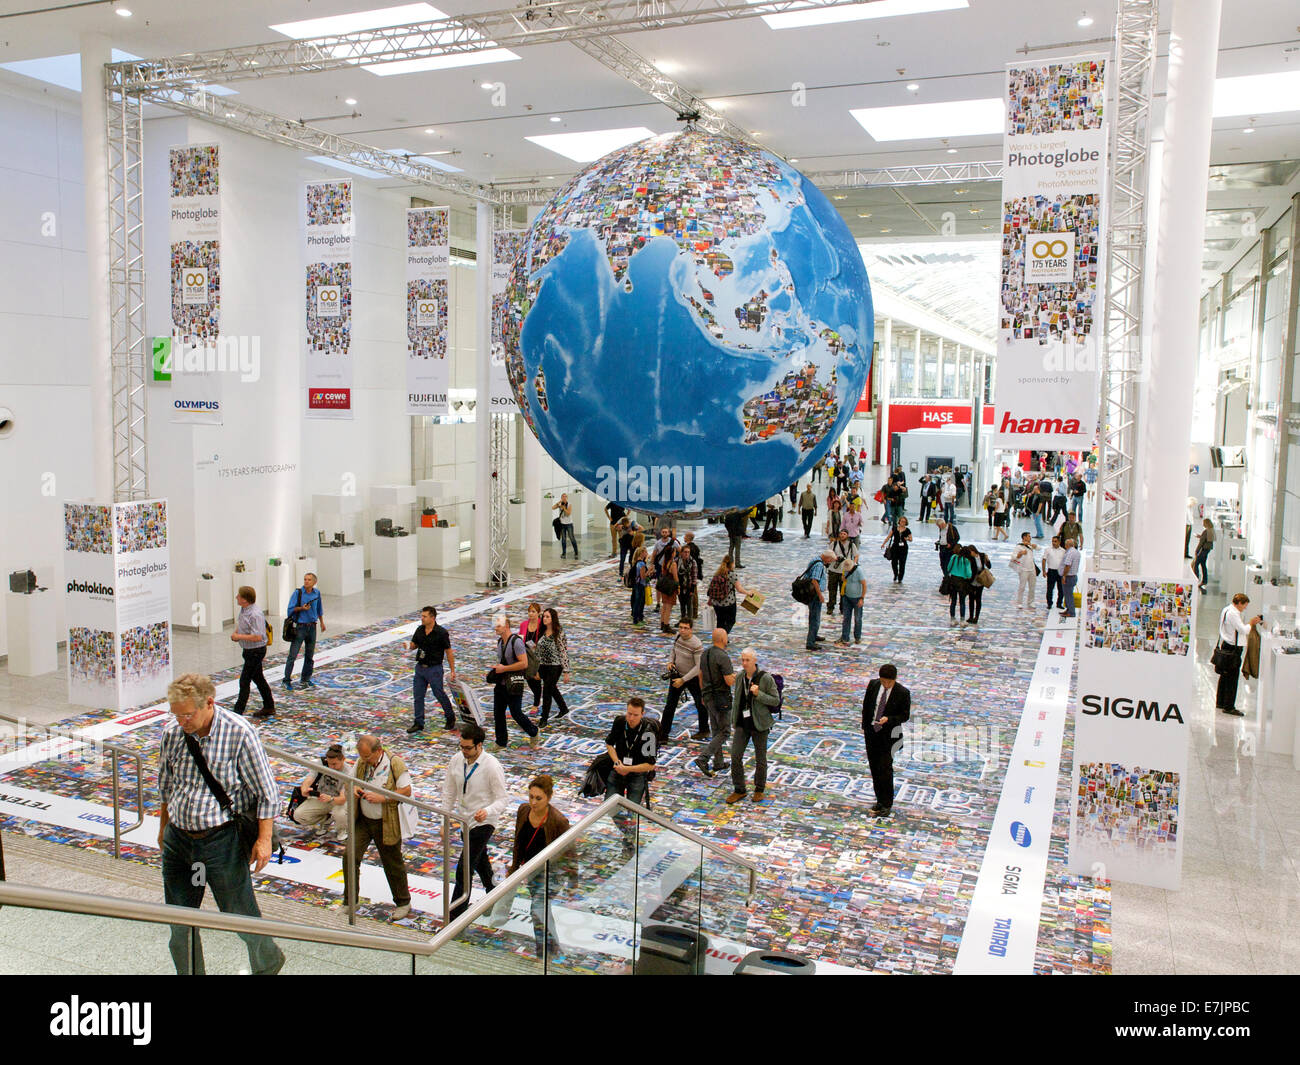 Photokina 2014 entrée avec tapis et photo grand globe avec images, et beaucoup de visiteurs. Cologne, NRW, Allemagne Banque D'Images